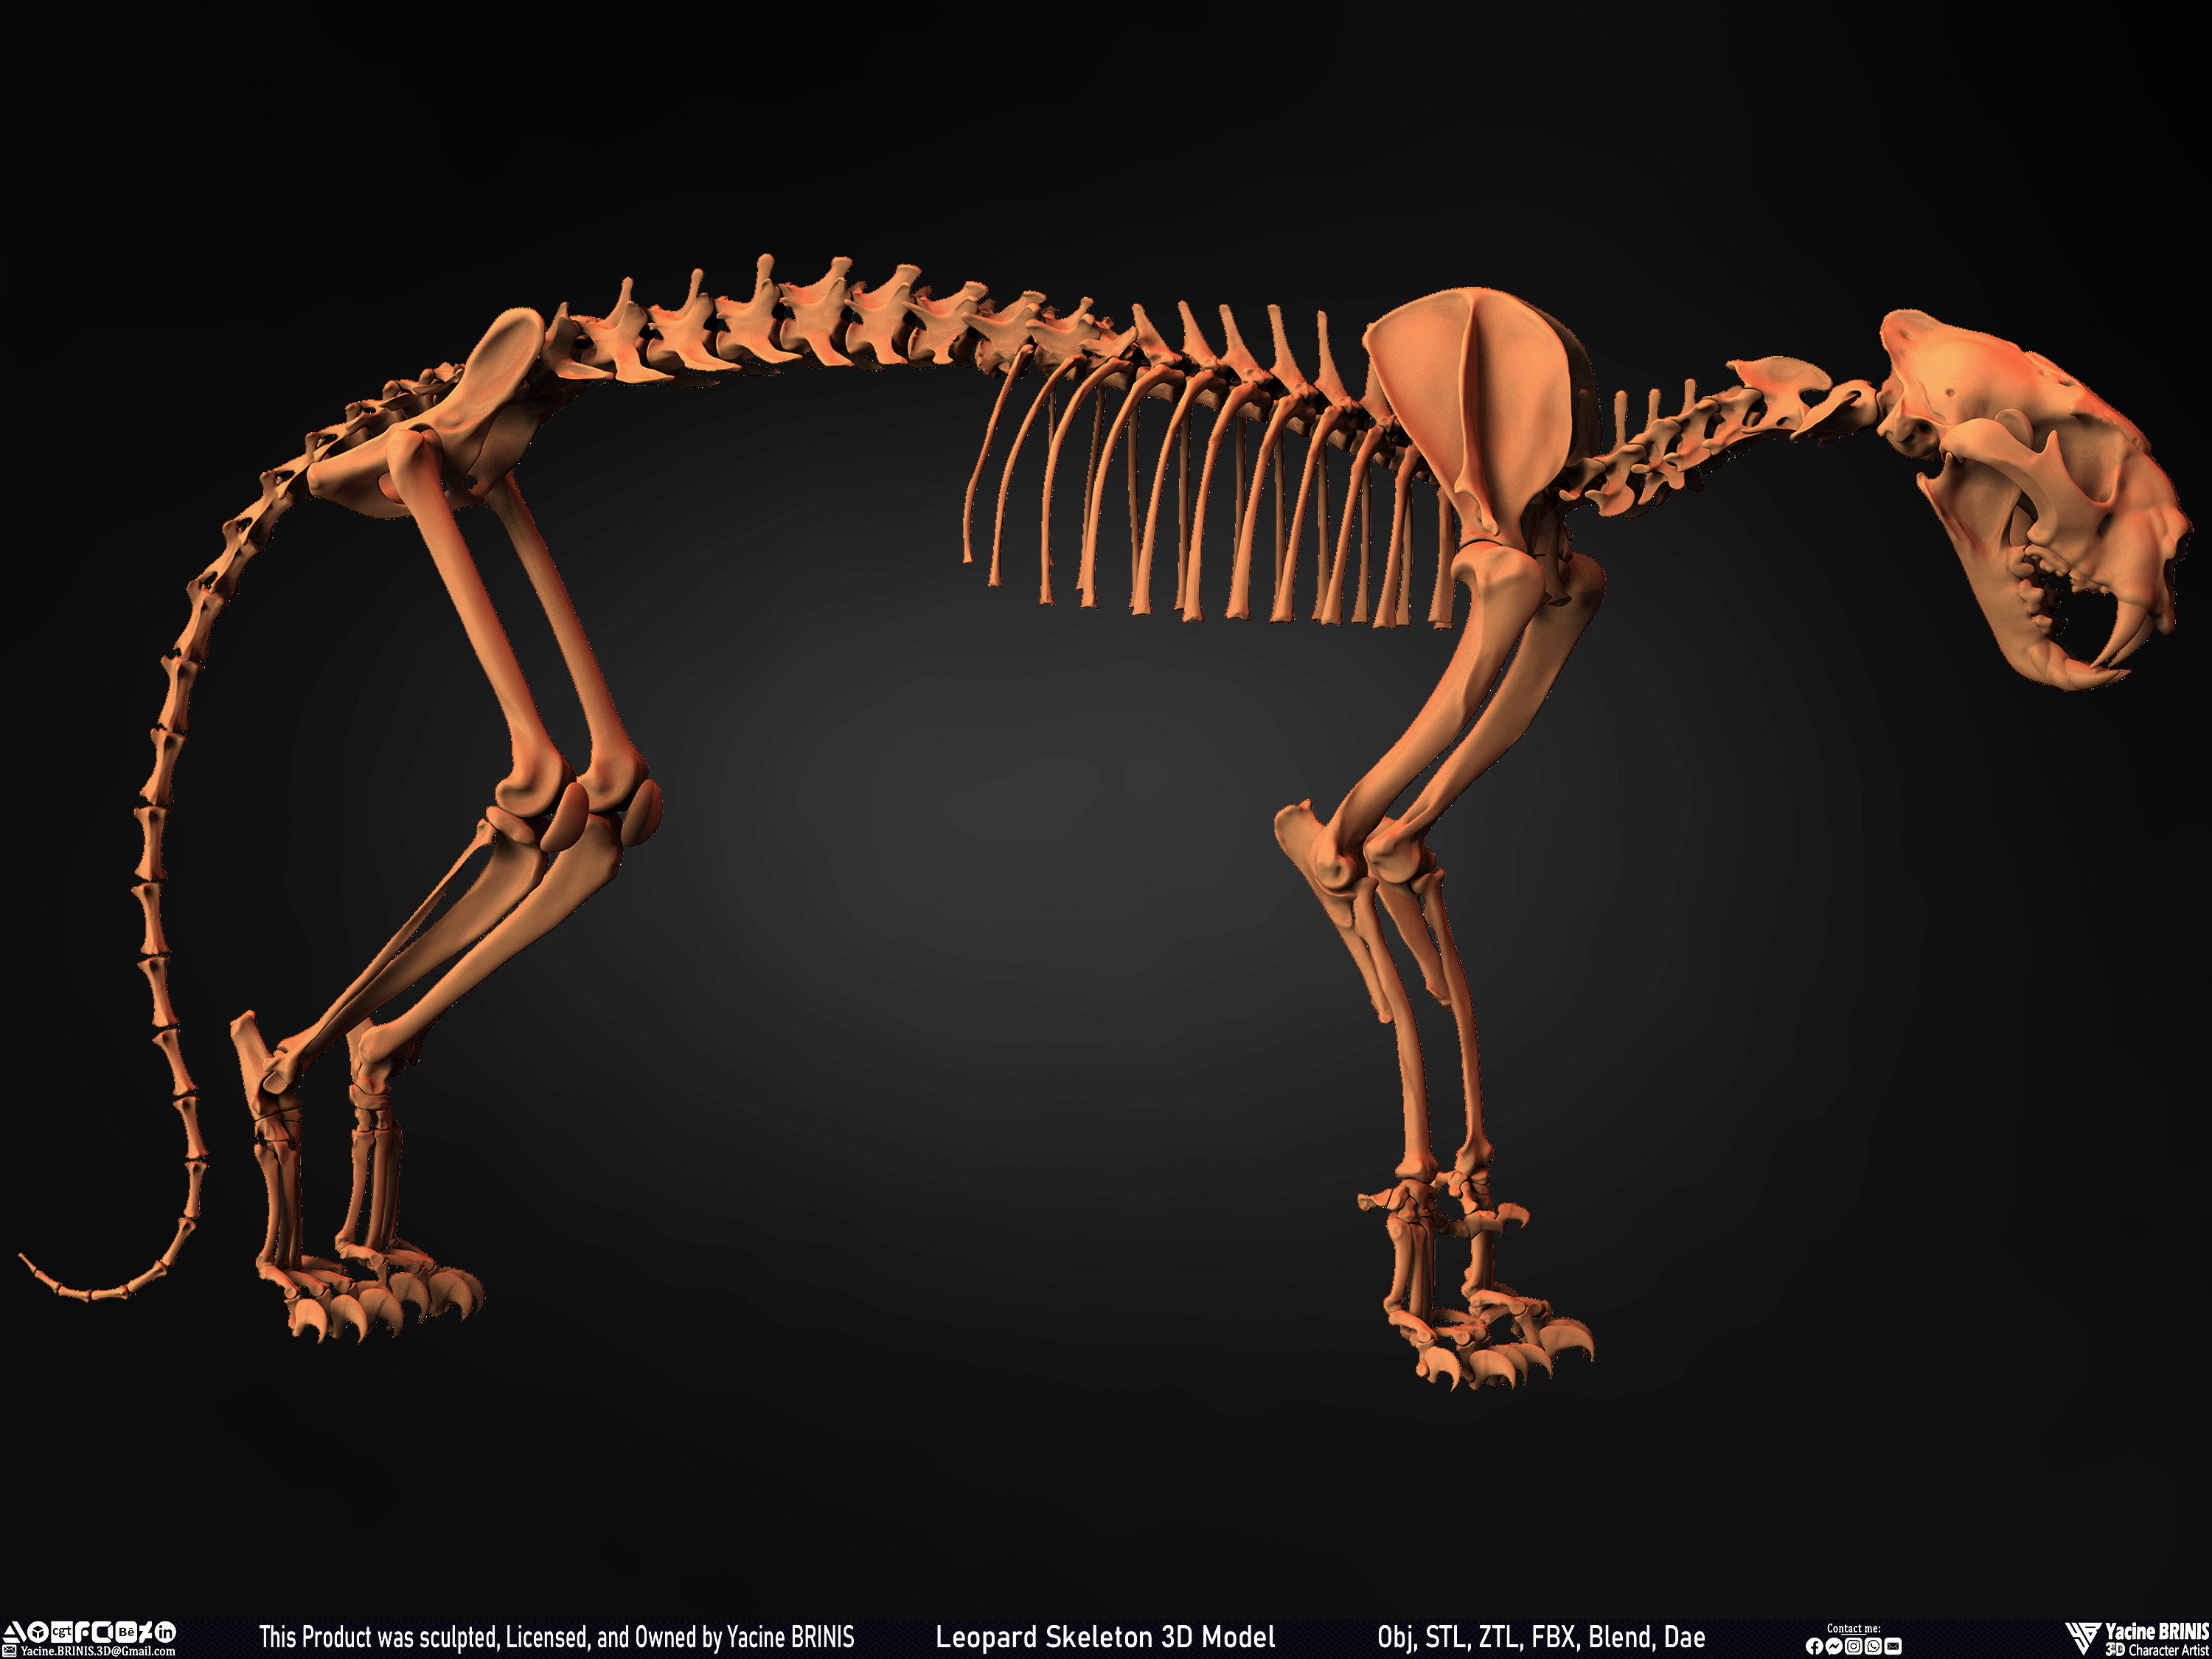 Leopard Skeleton 3D Model Sculpted By Yacine BRINIS 016